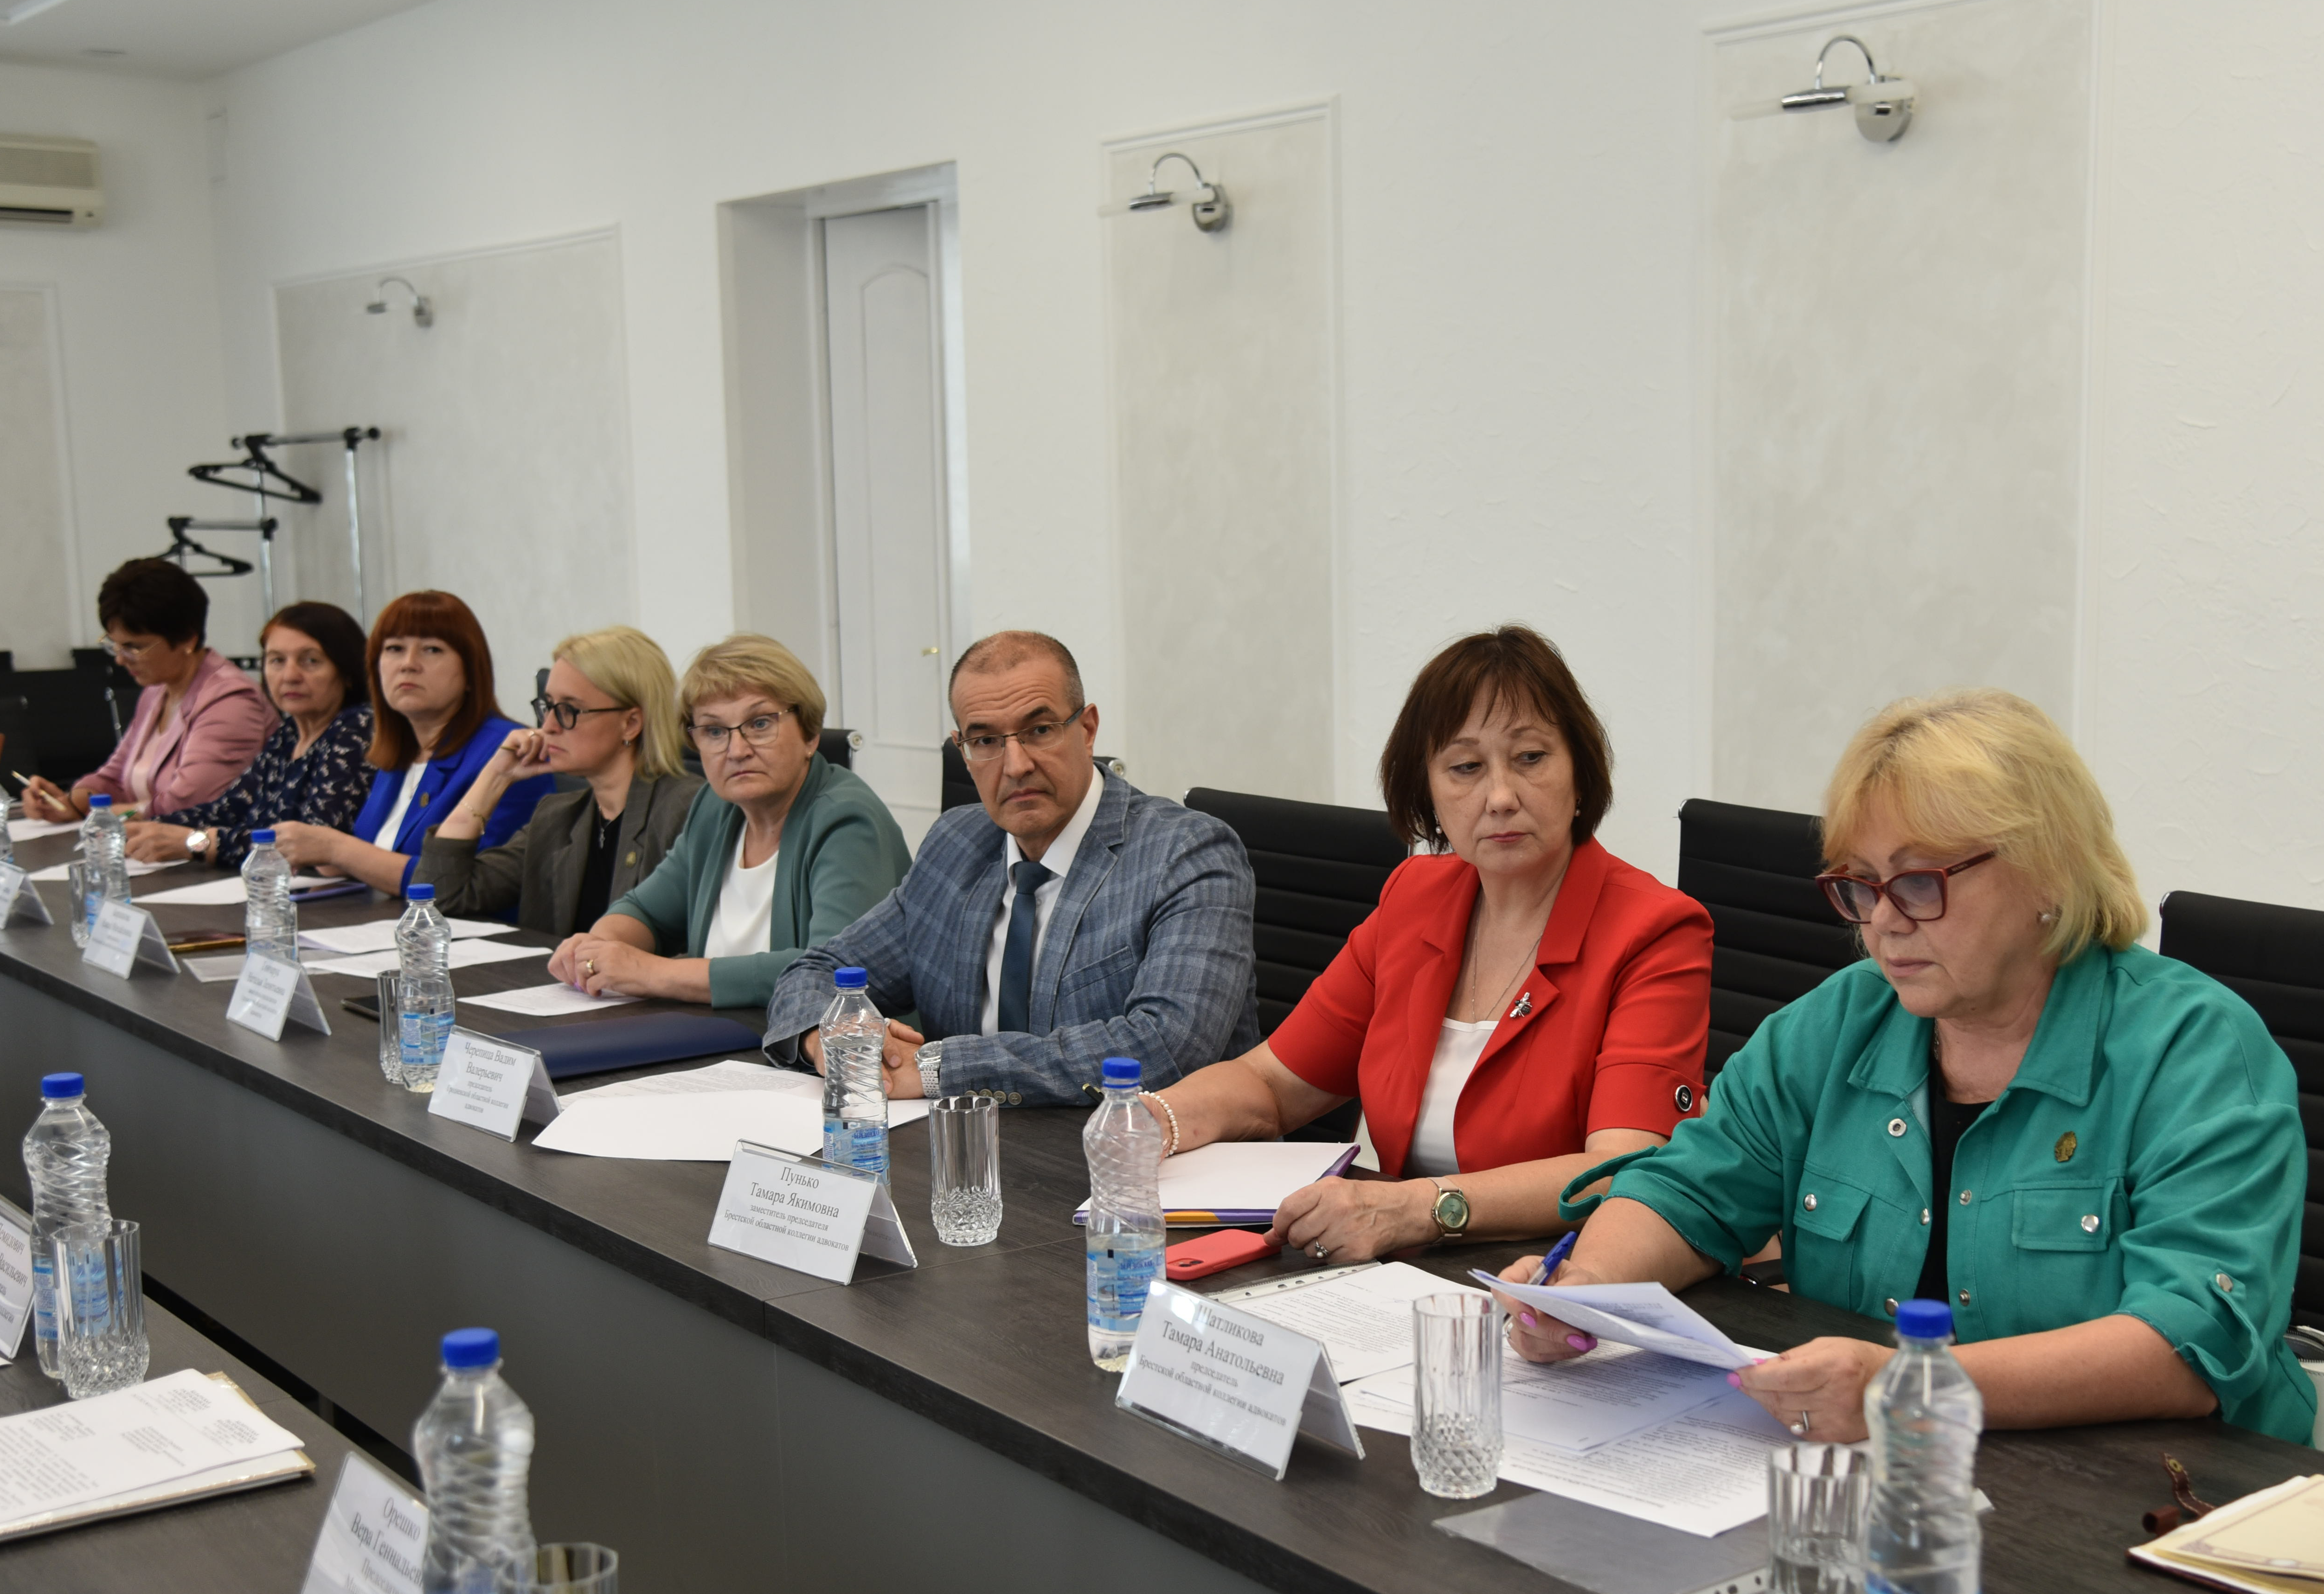 Заседание совета Белорусской республиканской коллегии адвокатов состоялось в Минске